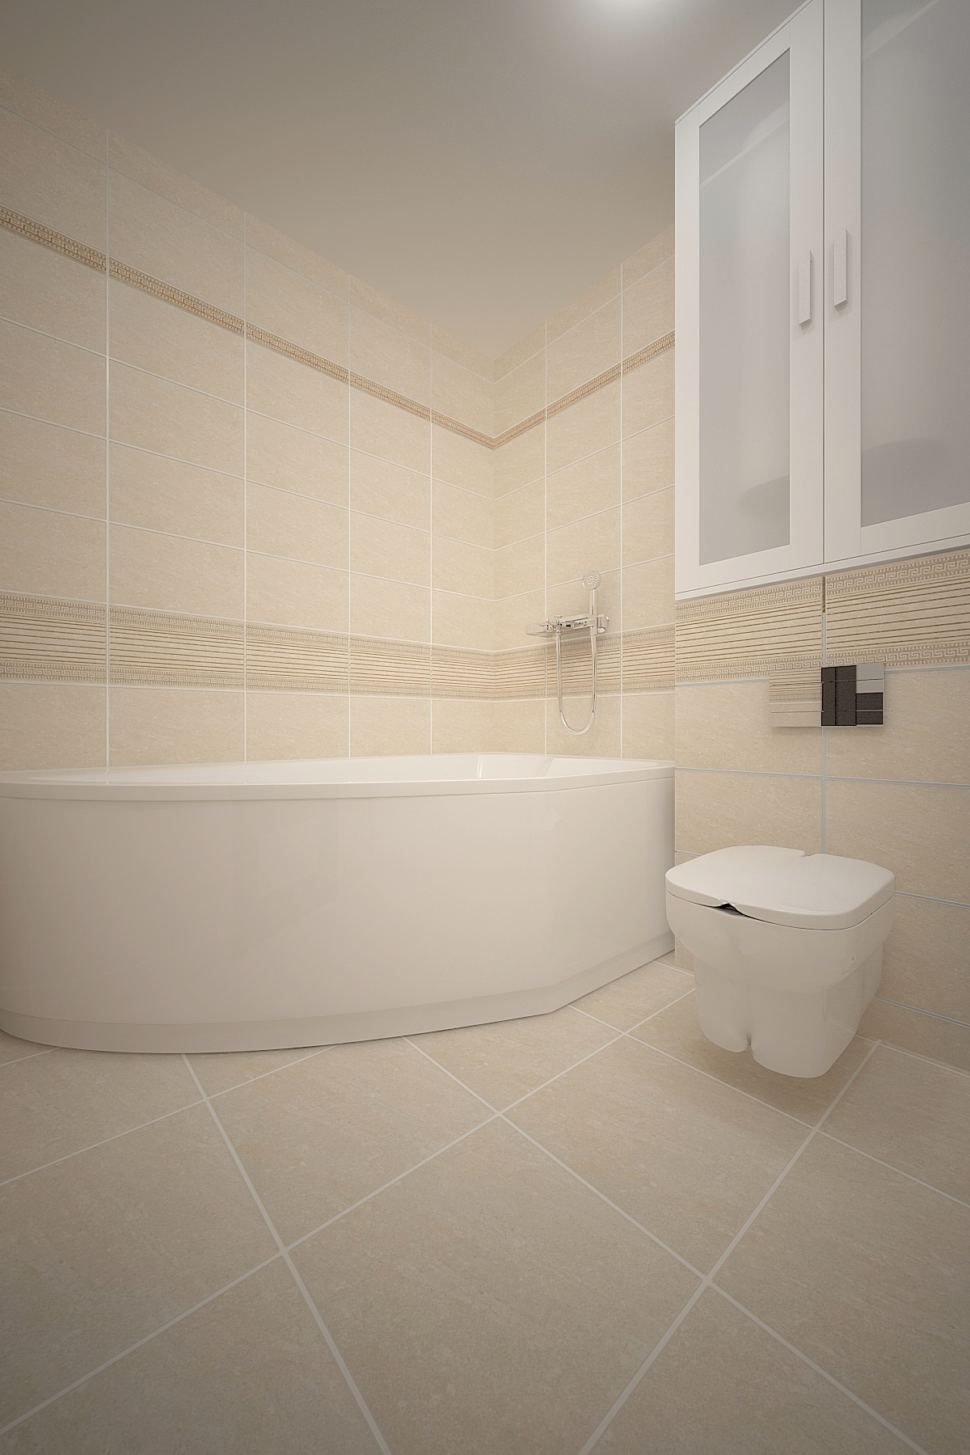 Дизайн-проект ванной комнаты 3 кв.м в бежевых тонах, керамическая плитка бежевая, белый шкаф, унитаз, ванна